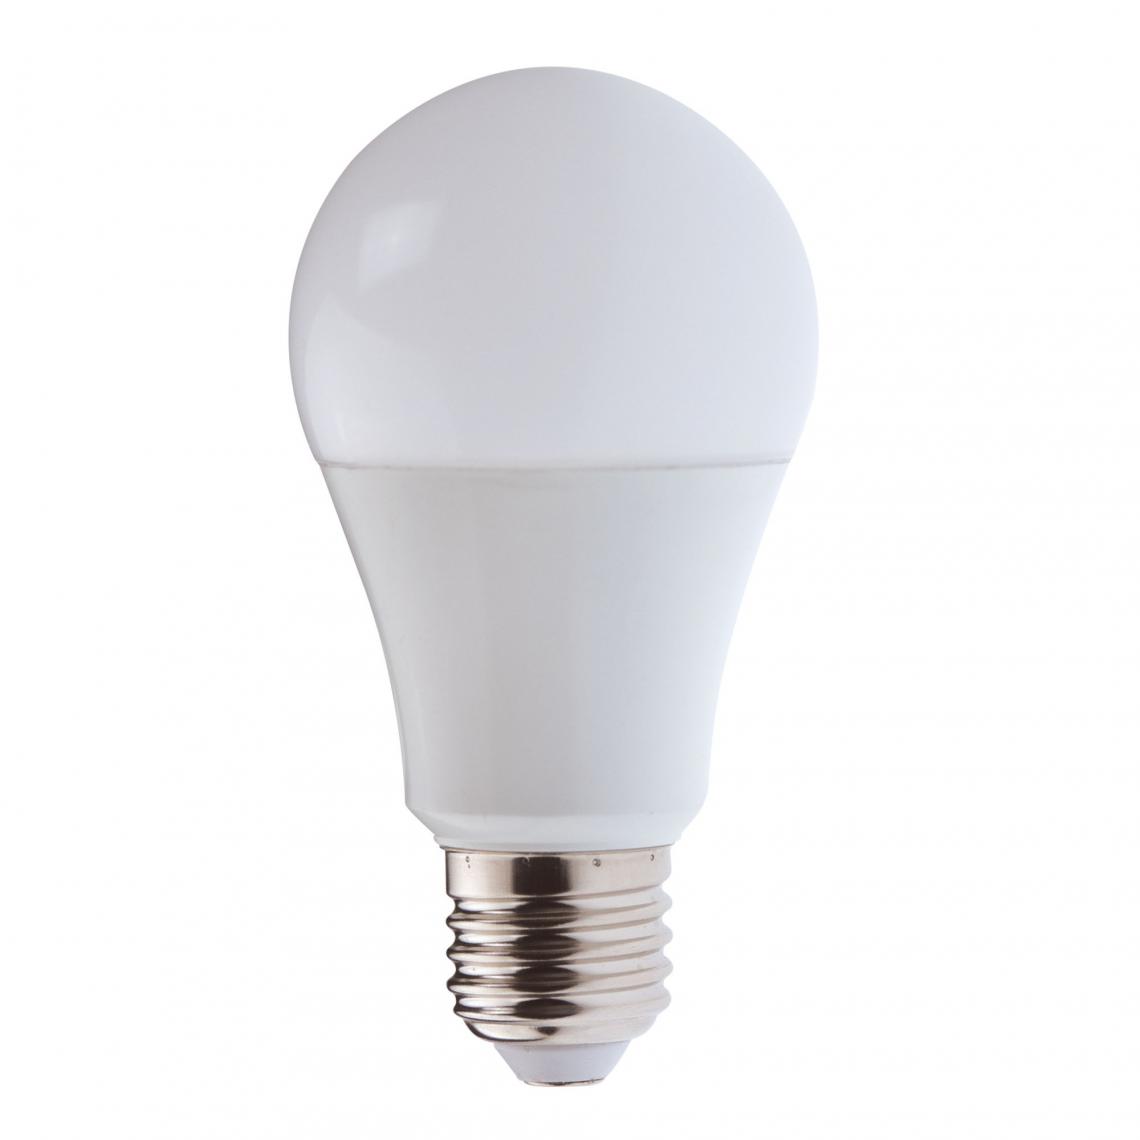 Velamp - Ampoule LED SMD, spot GU10 PAR16, 230V, 9W/806lm, 3000K, 110° - Ampoules LED